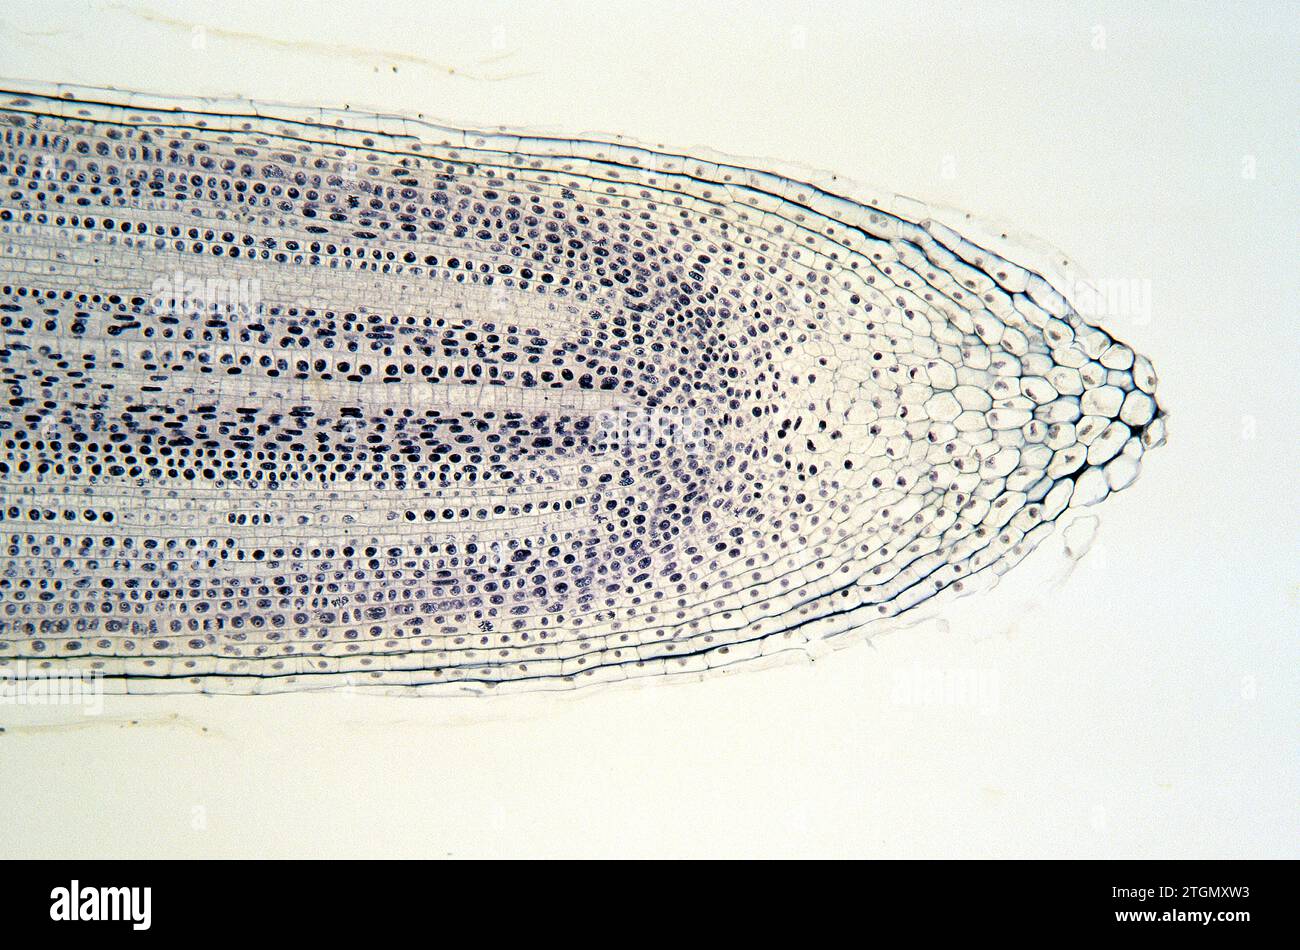 Calyptra oder Wurzelkappe schützt meristematisches Gewebe der Zwiebelwurzel. Zellen auf Mitose. Stockfoto